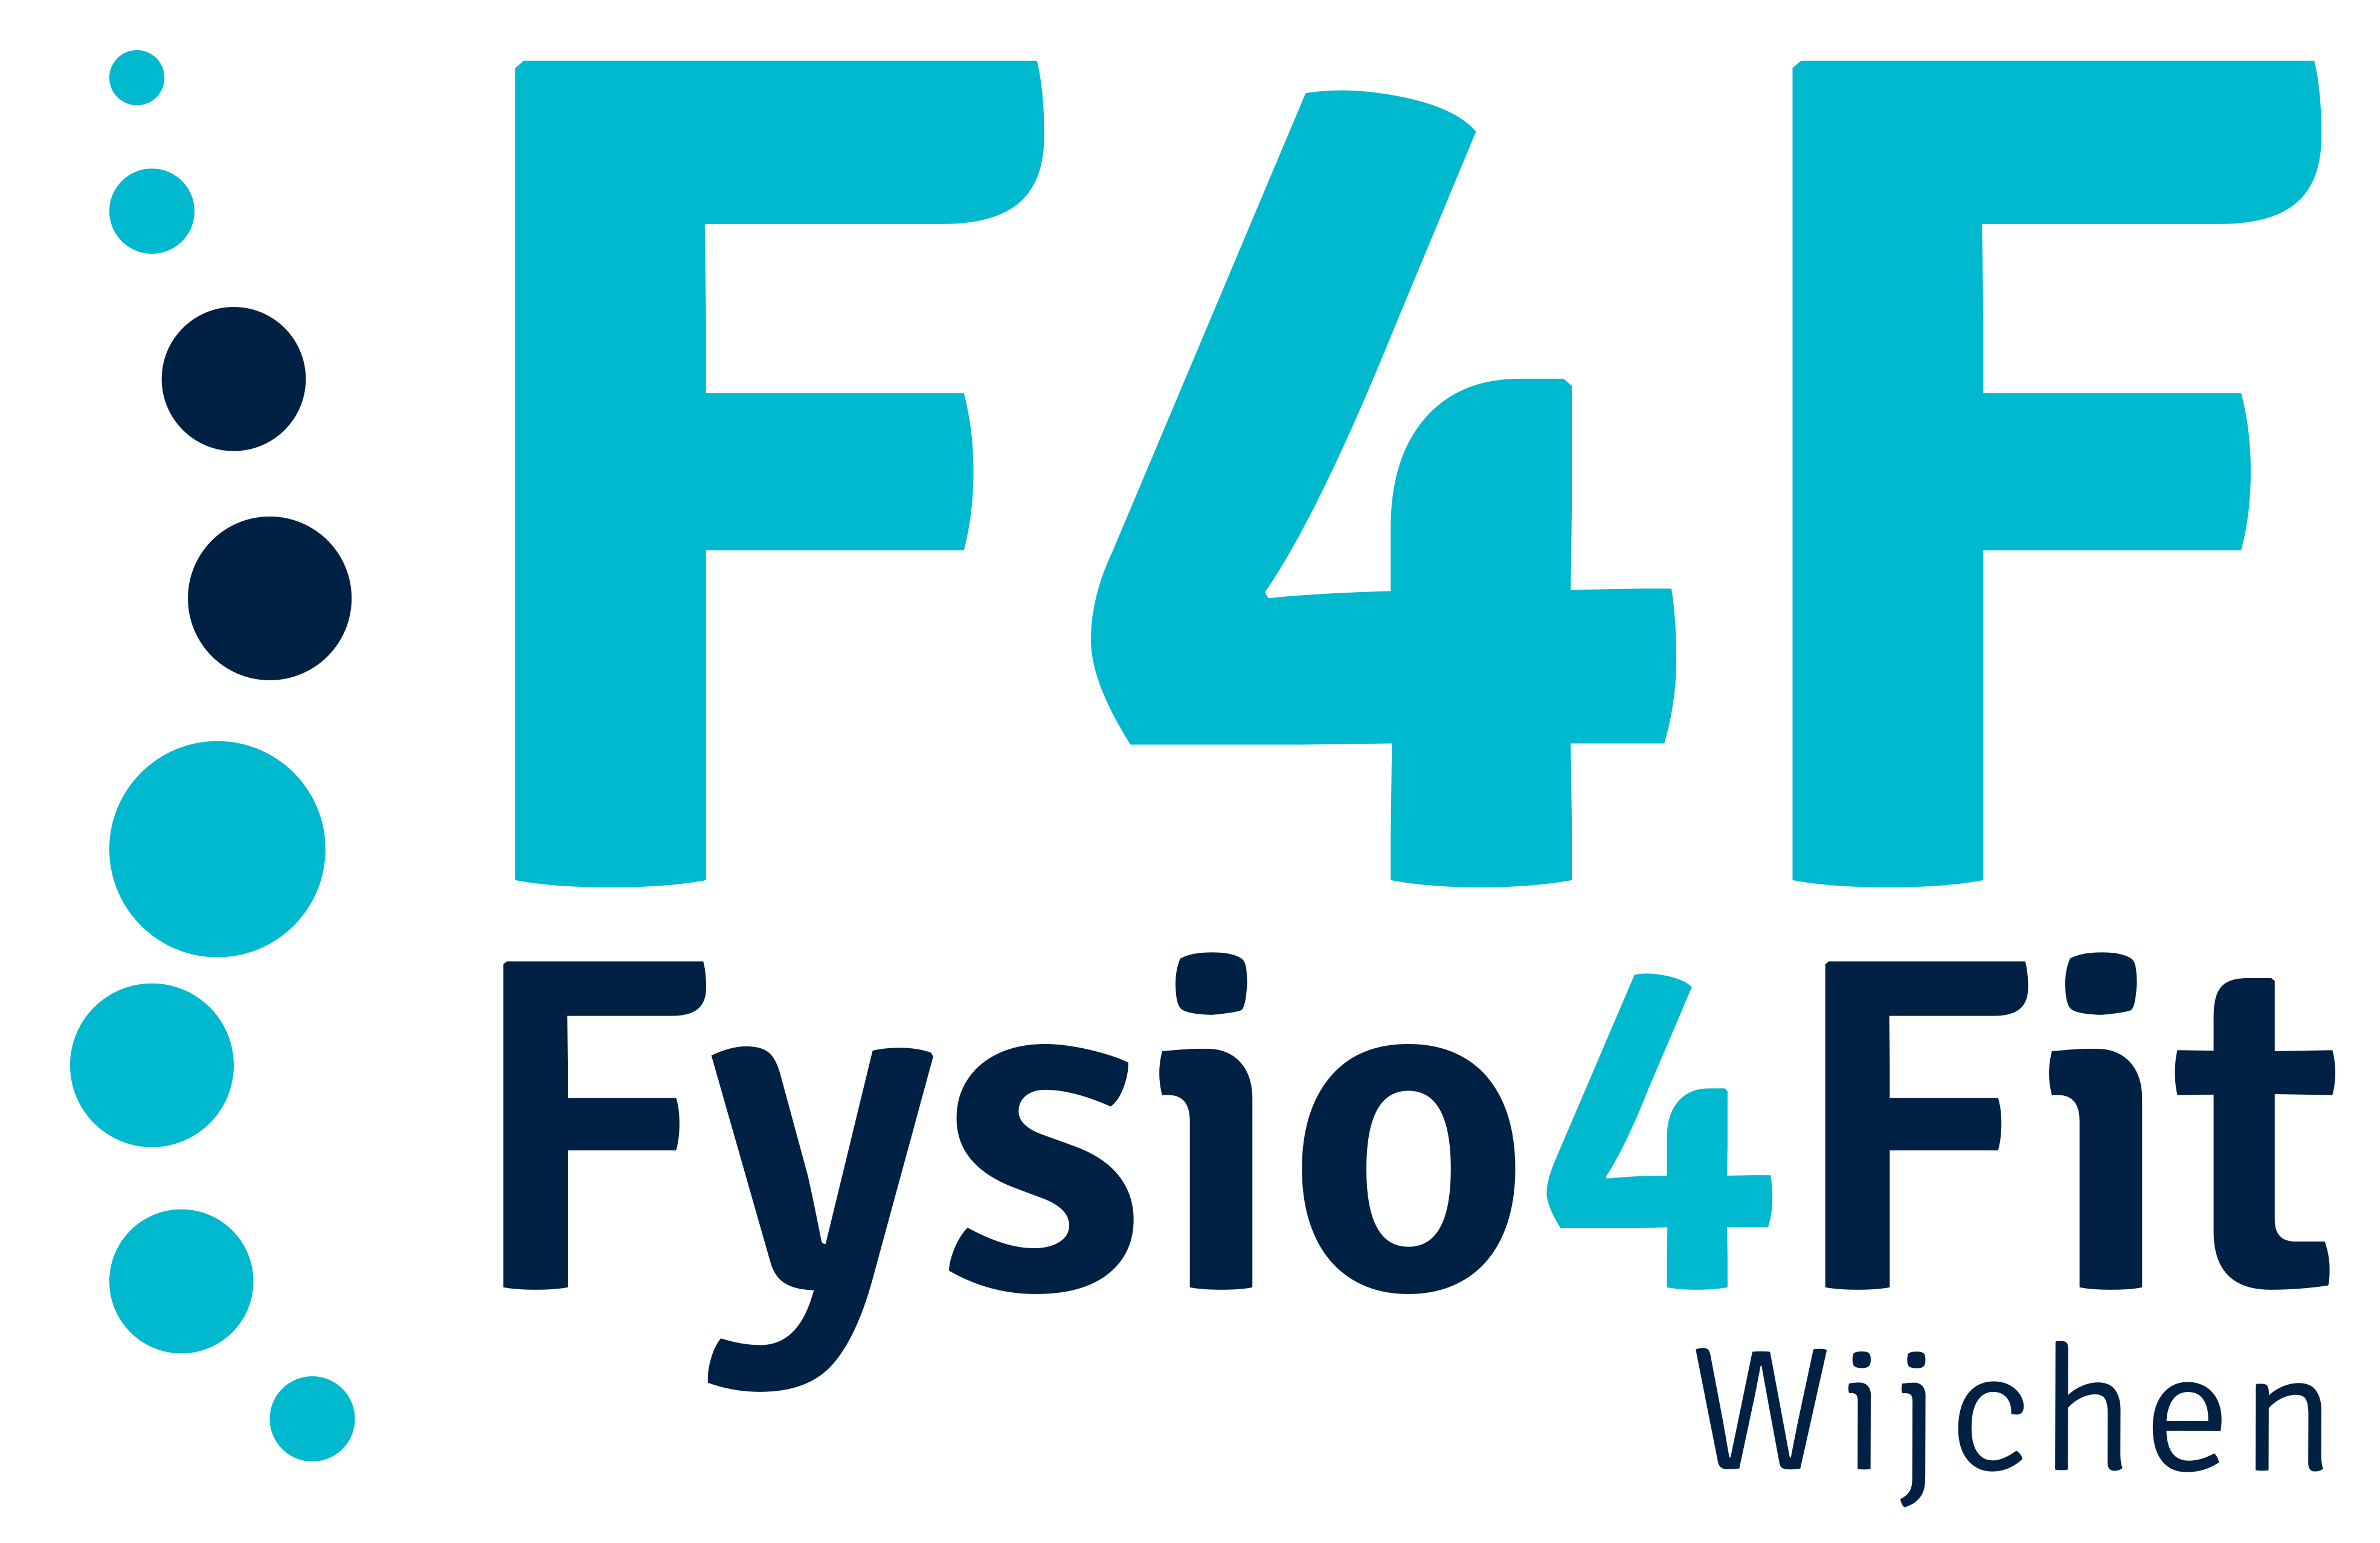 F4F Wijchen logo